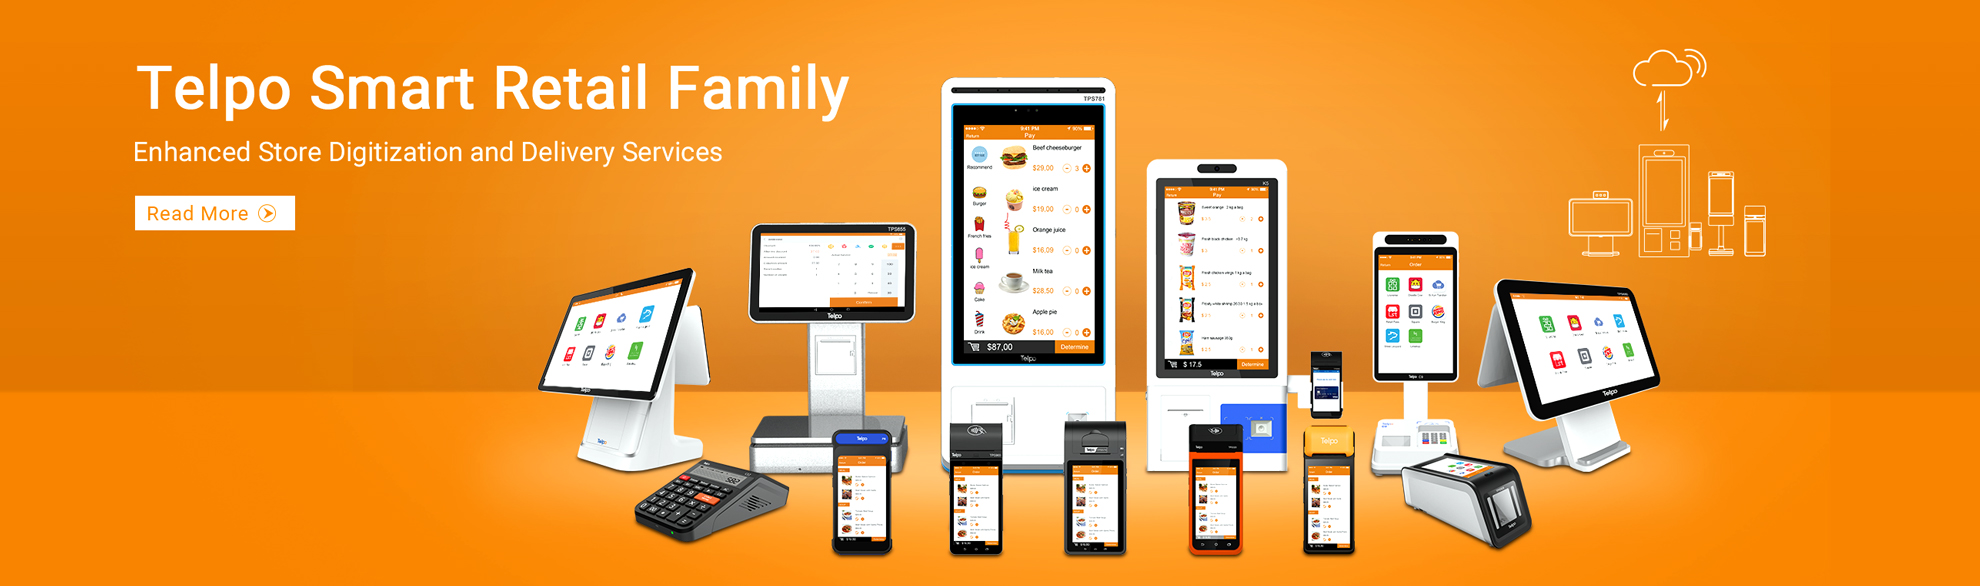 Telpo Smart Retail Family